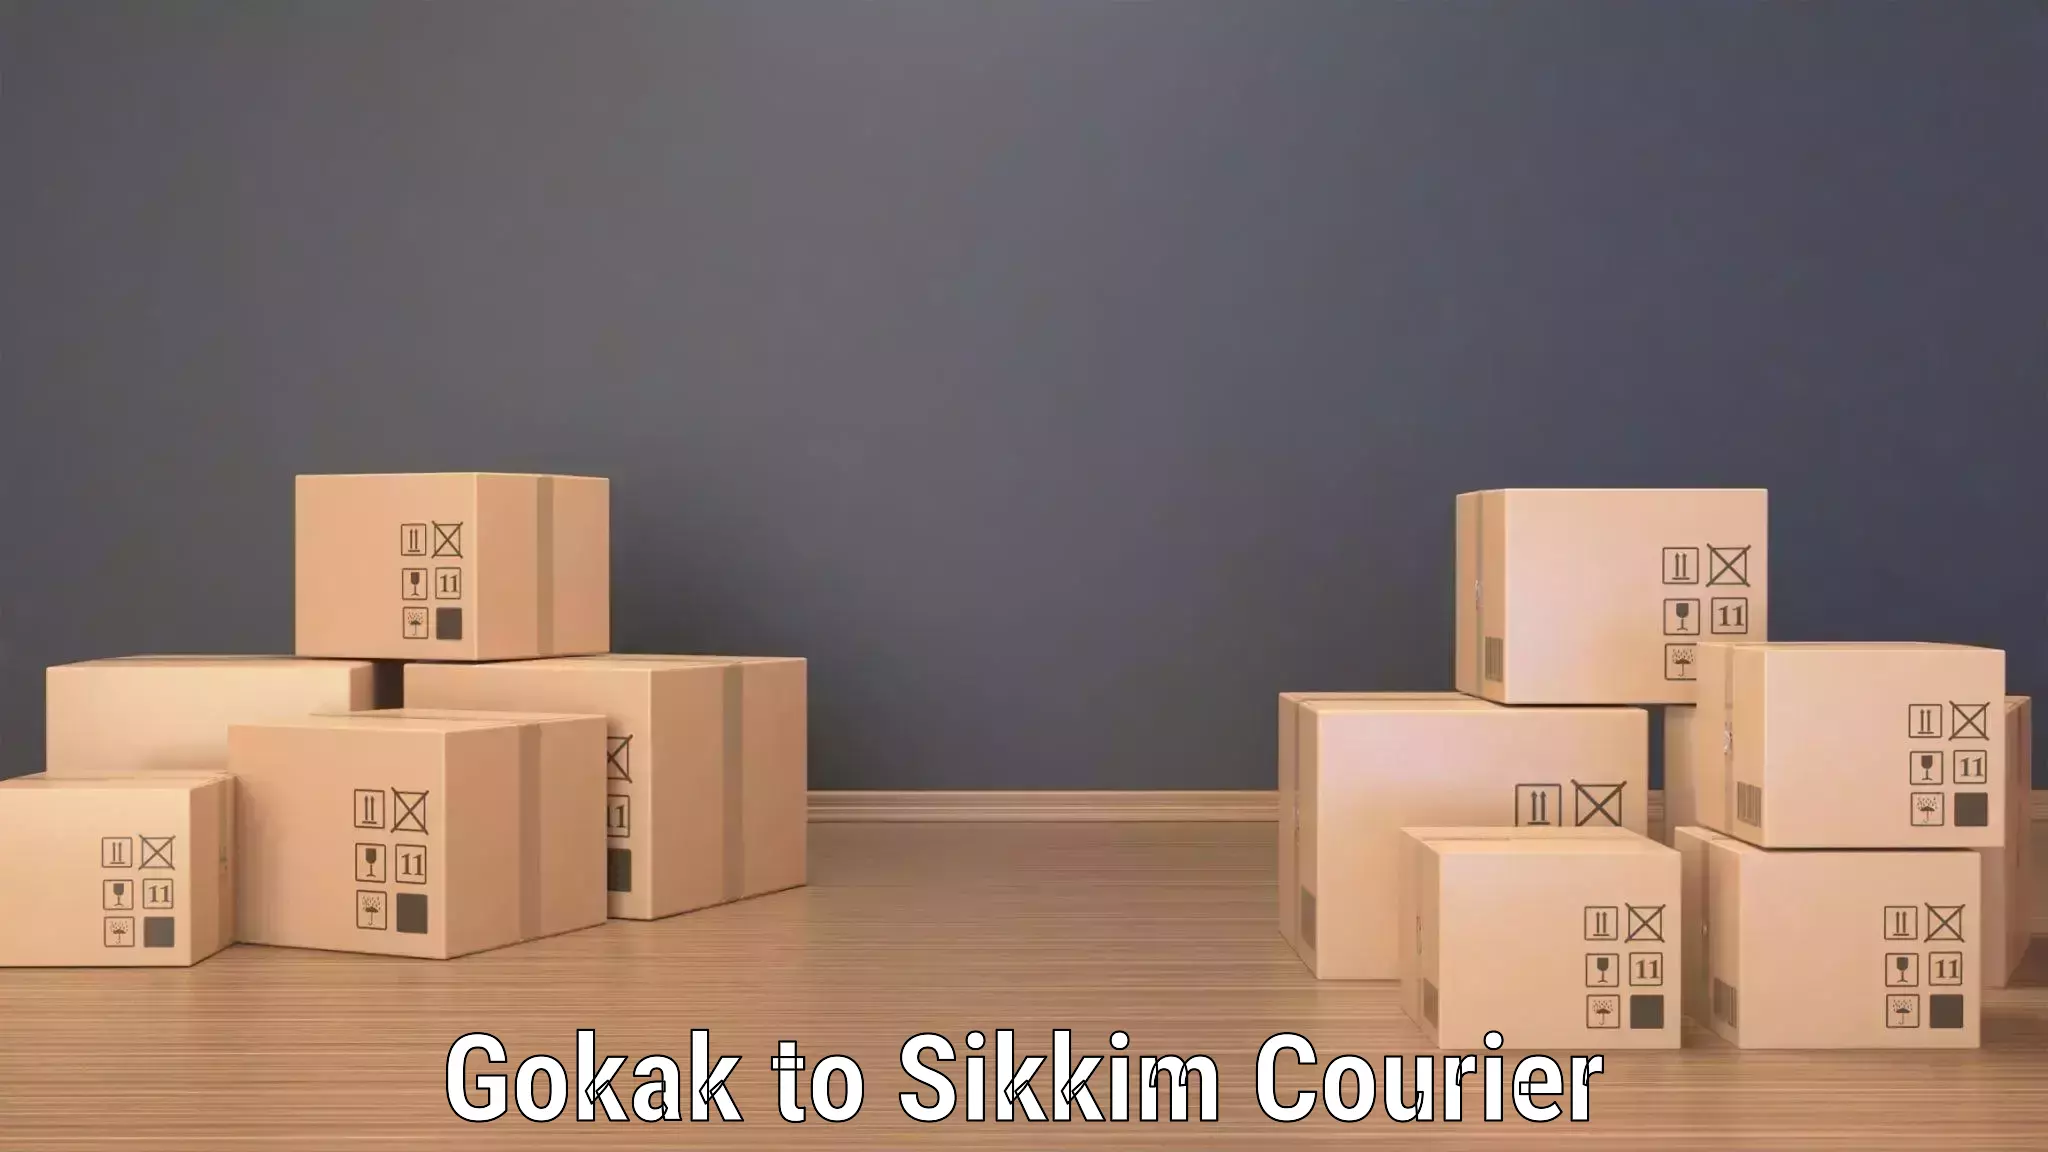 Digital courier platforms in Gokak to Sikkim